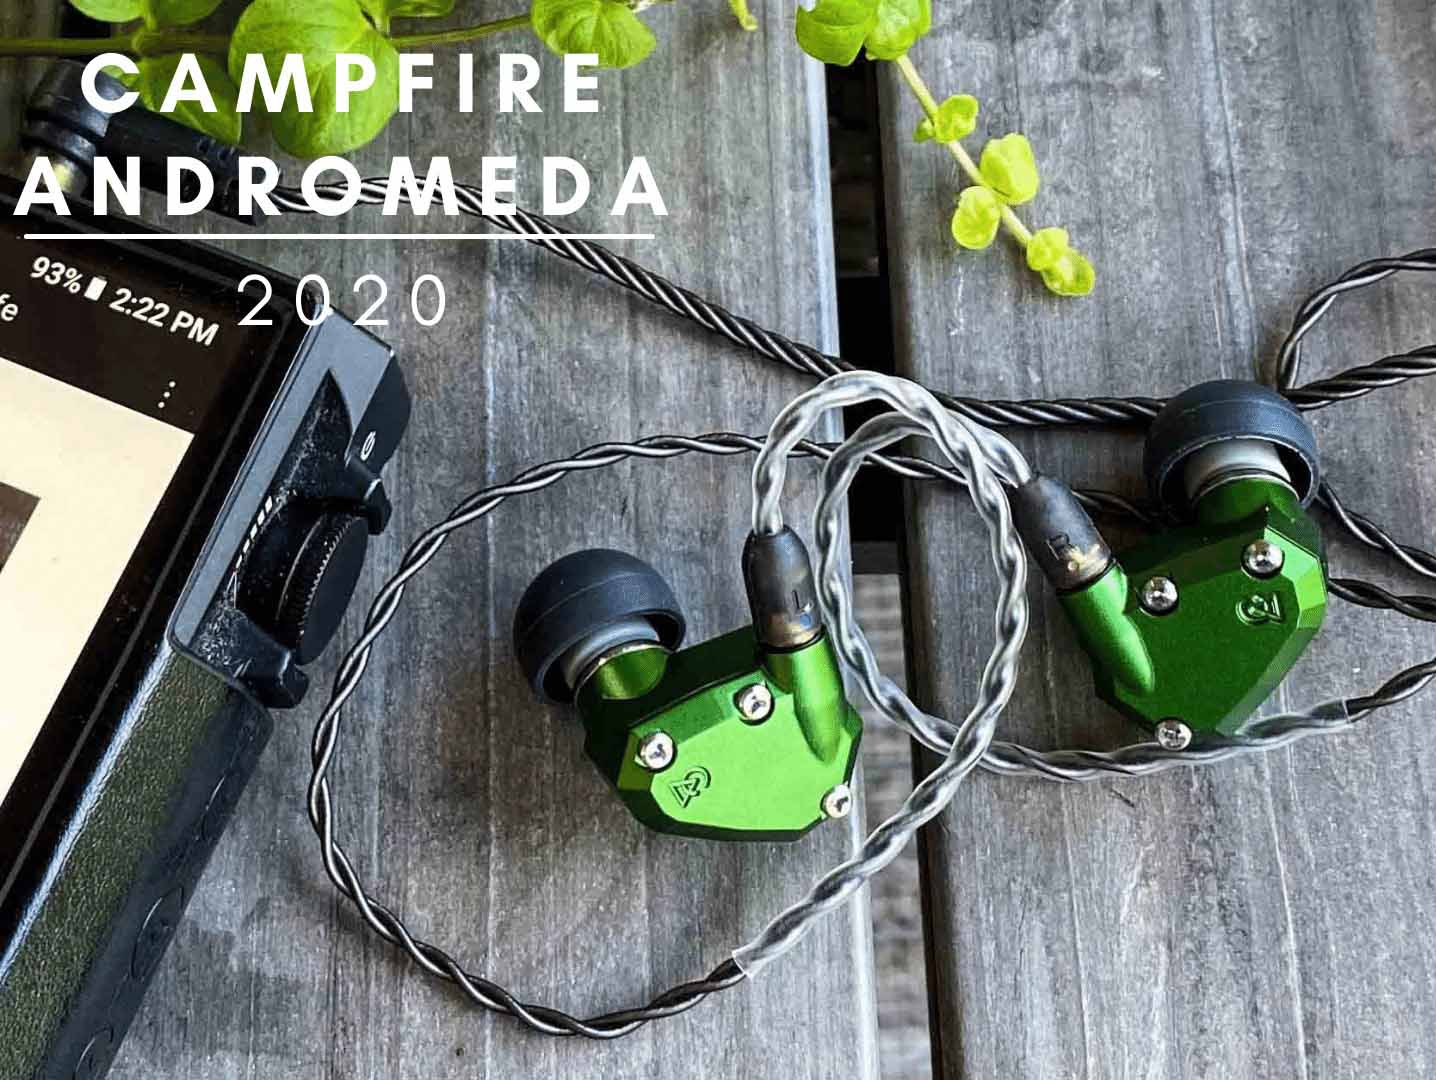 Đánh giá Campfire Andromeda 2020: Mẫu tai nghe đi cùng năm tháng của Campfire Audio